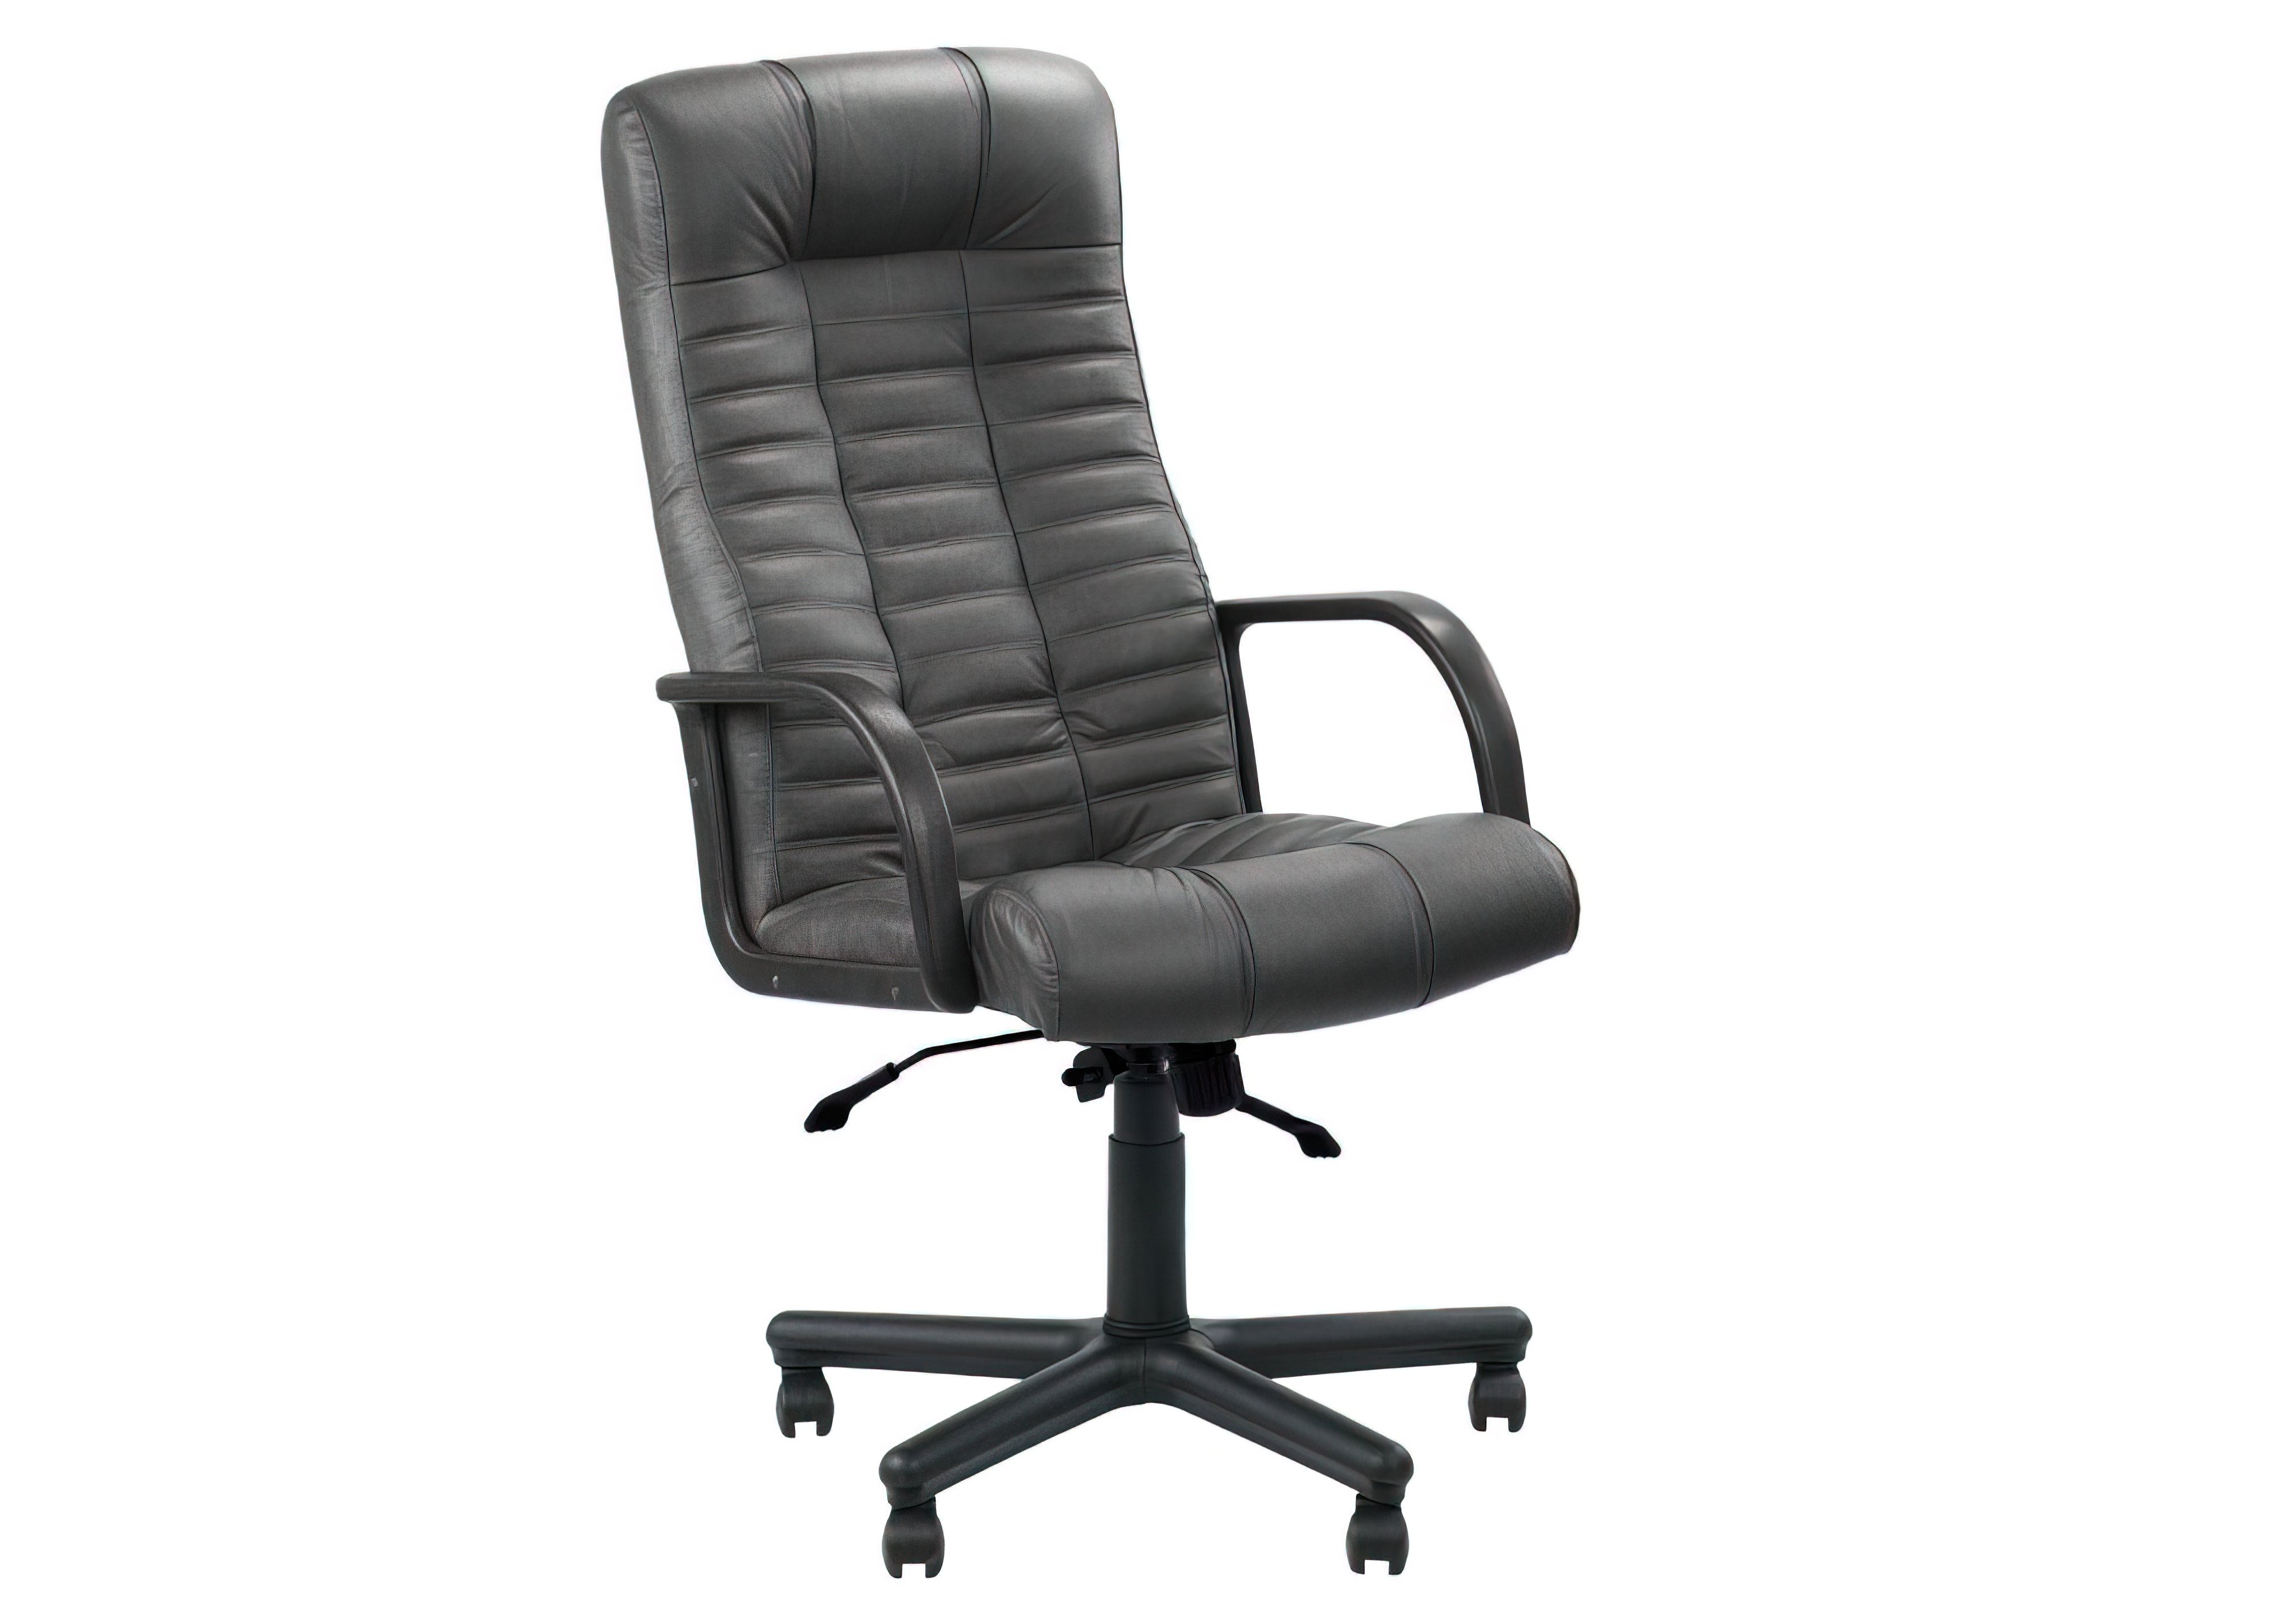 Кресло ATLANT BX LUX Anyfix PL64 Новый стиль, Высота 125см, Ширина сиденья 54,5см